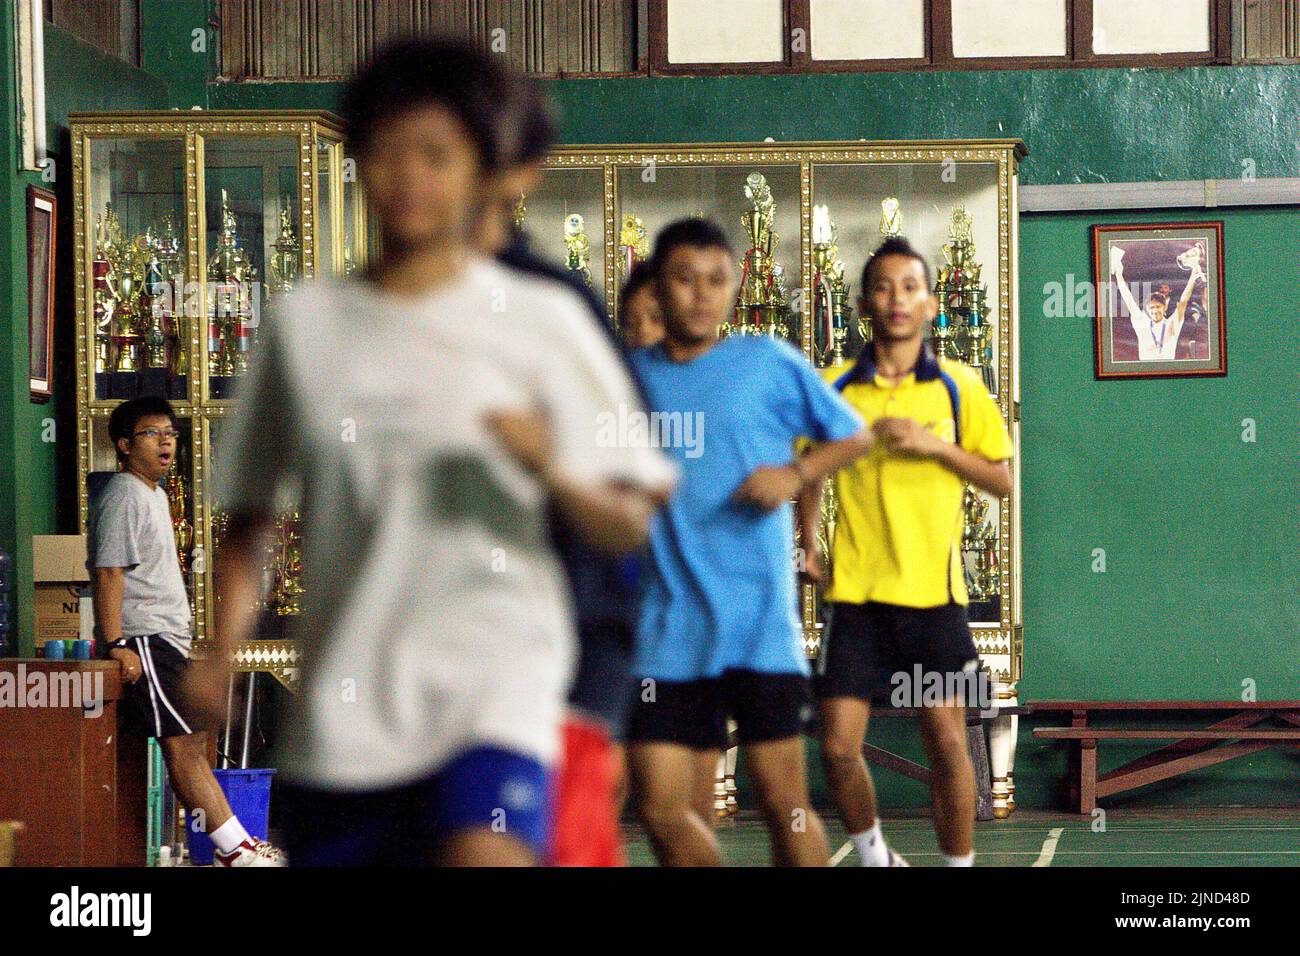 De jeunes joueurs de badminton se réchauffent lors d'une séance d'entraînement au club de badminton Jaya Raya à Jakarta, en Indonésie, photographiés dans un fond d'armoire à trophées et une photo de l'ancien joueur vedette du club, Susi Susanti, médaillé d'or olympique. Banque D'Images